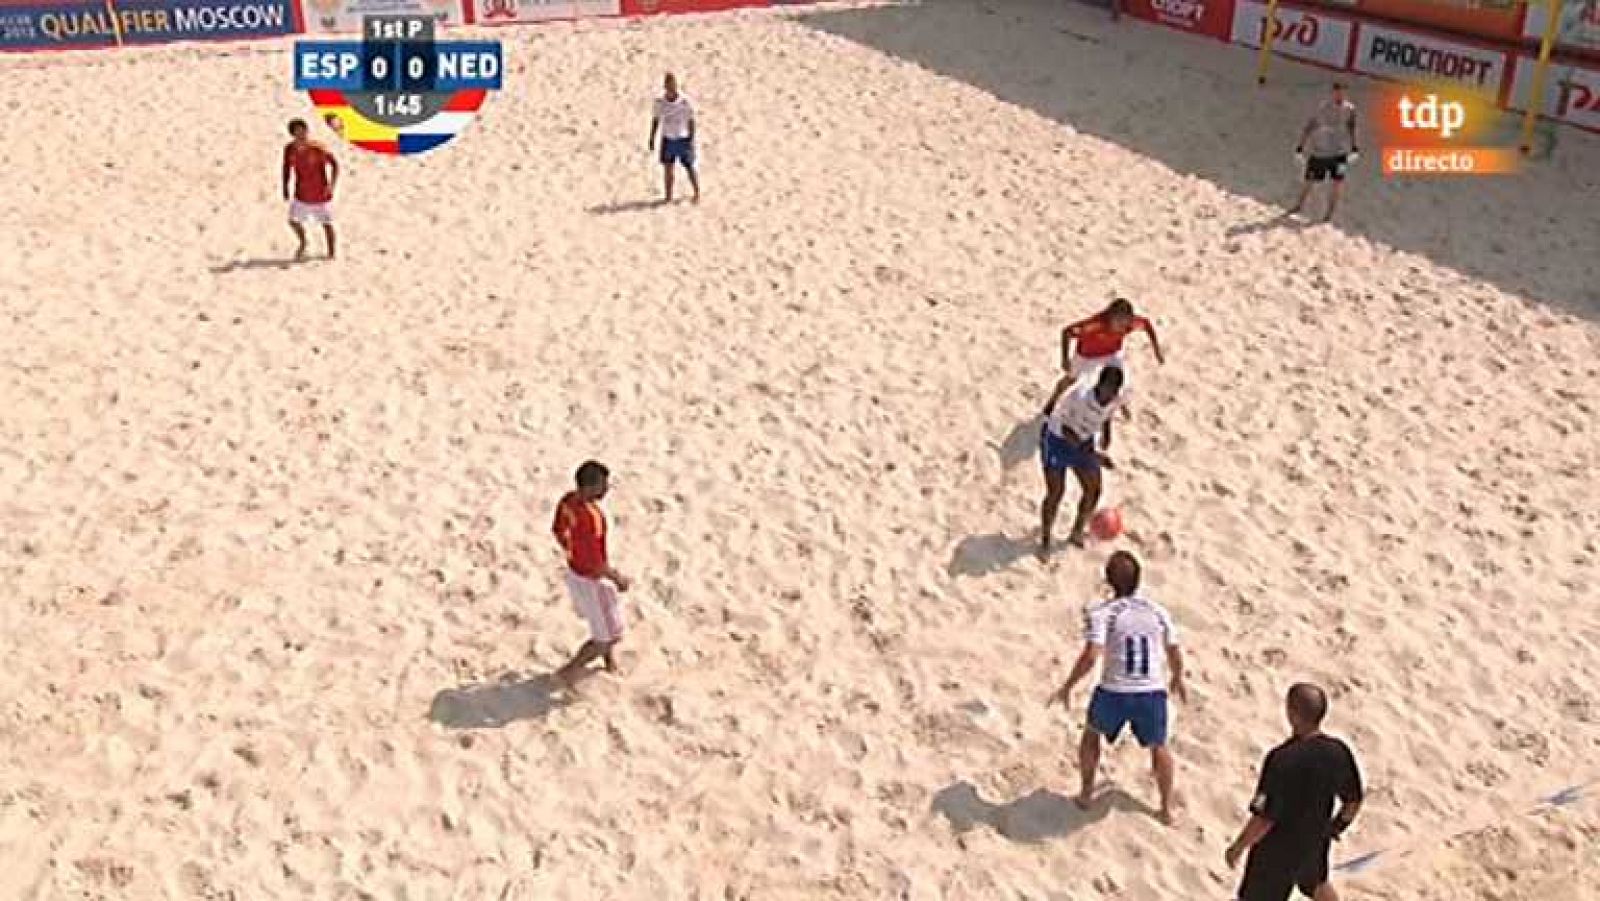 Fútbol playa - Torneo de clasificación de la Copa del Mundo 2013 - España-Paises Bajos